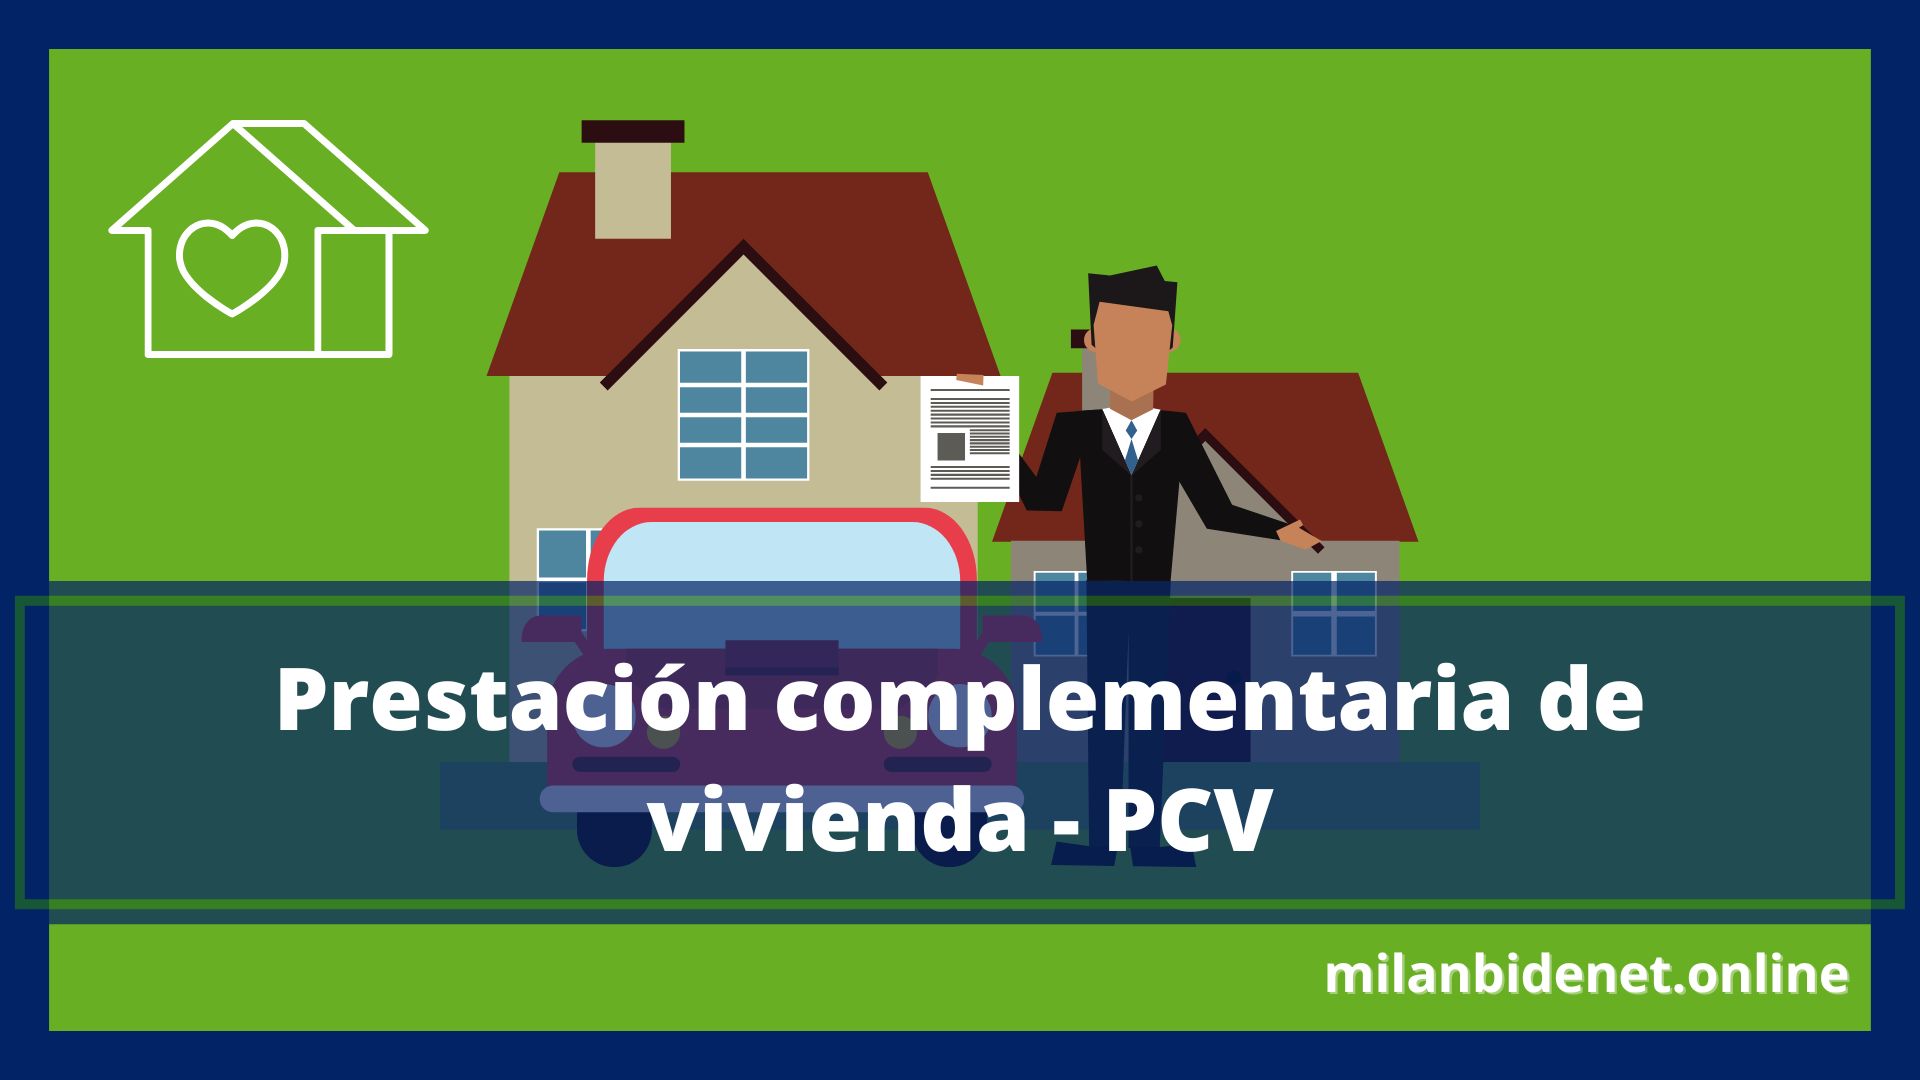 Prestación complementaria de vivienda - PCV